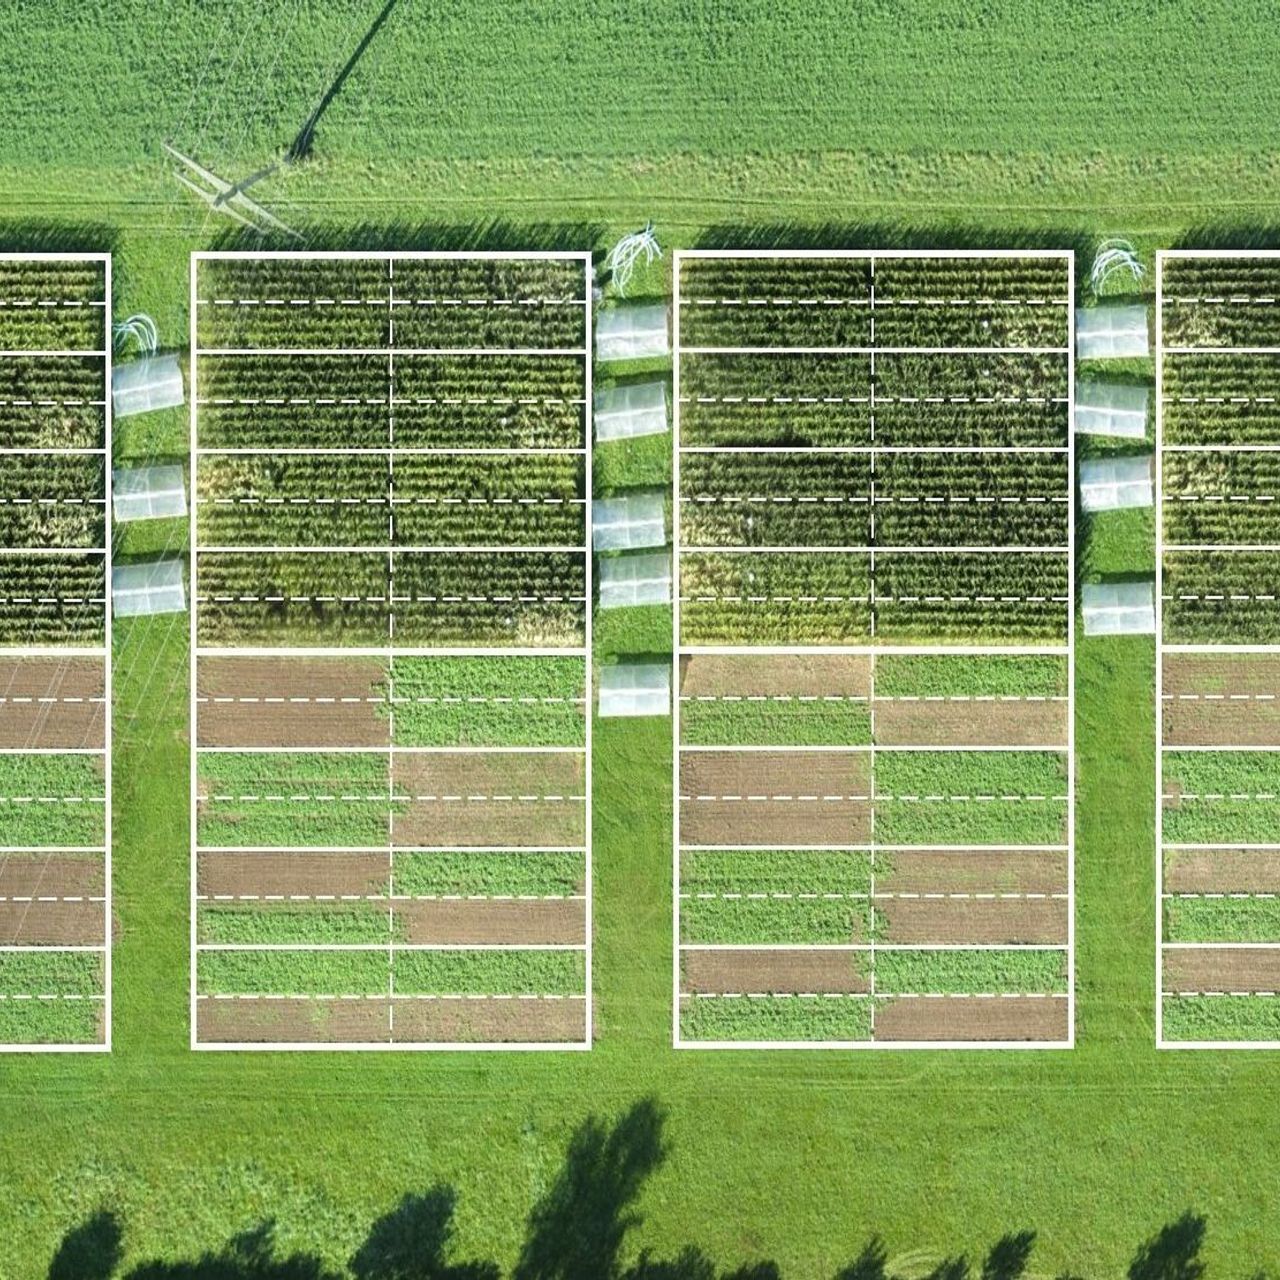 苏黎世 Agroscope 机构的农业系统和耕作实验评估了有机、保护性和传统耕作农业对植物产量和广泛的生态系统服务的影响：它还测试了不同的农业实践如何应对通过塑料重建的模拟干旱屏幕…